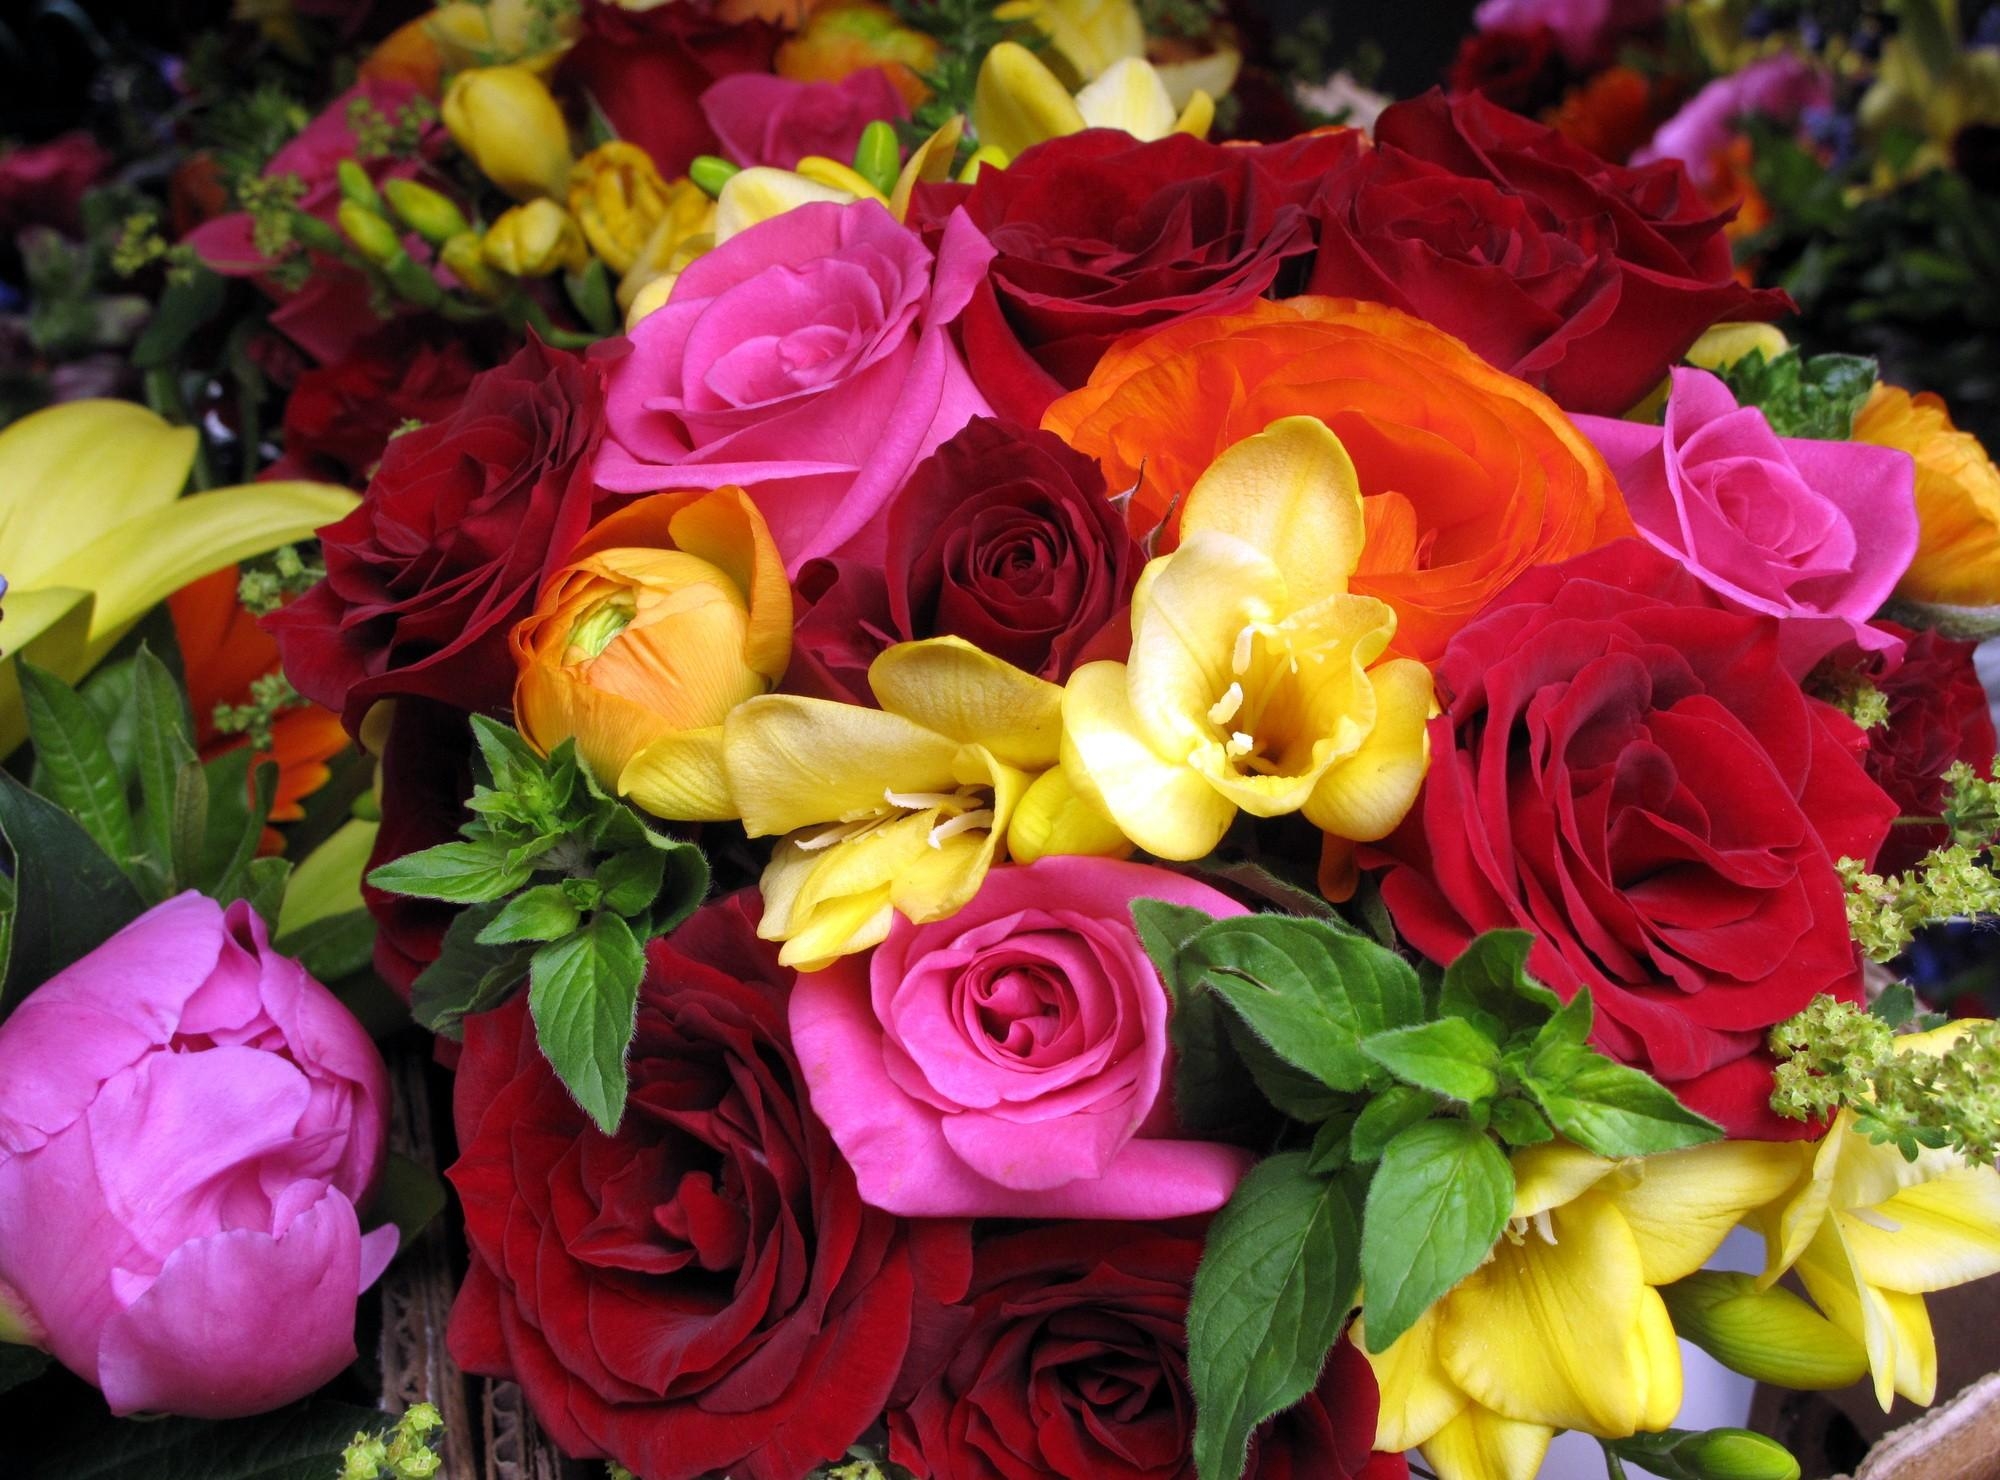 156773 Salvapantallas y fondos de pantalla Roses en tu teléfono. Descarga imágenes de de cerca, flores, ranúnculo, fresia gratis